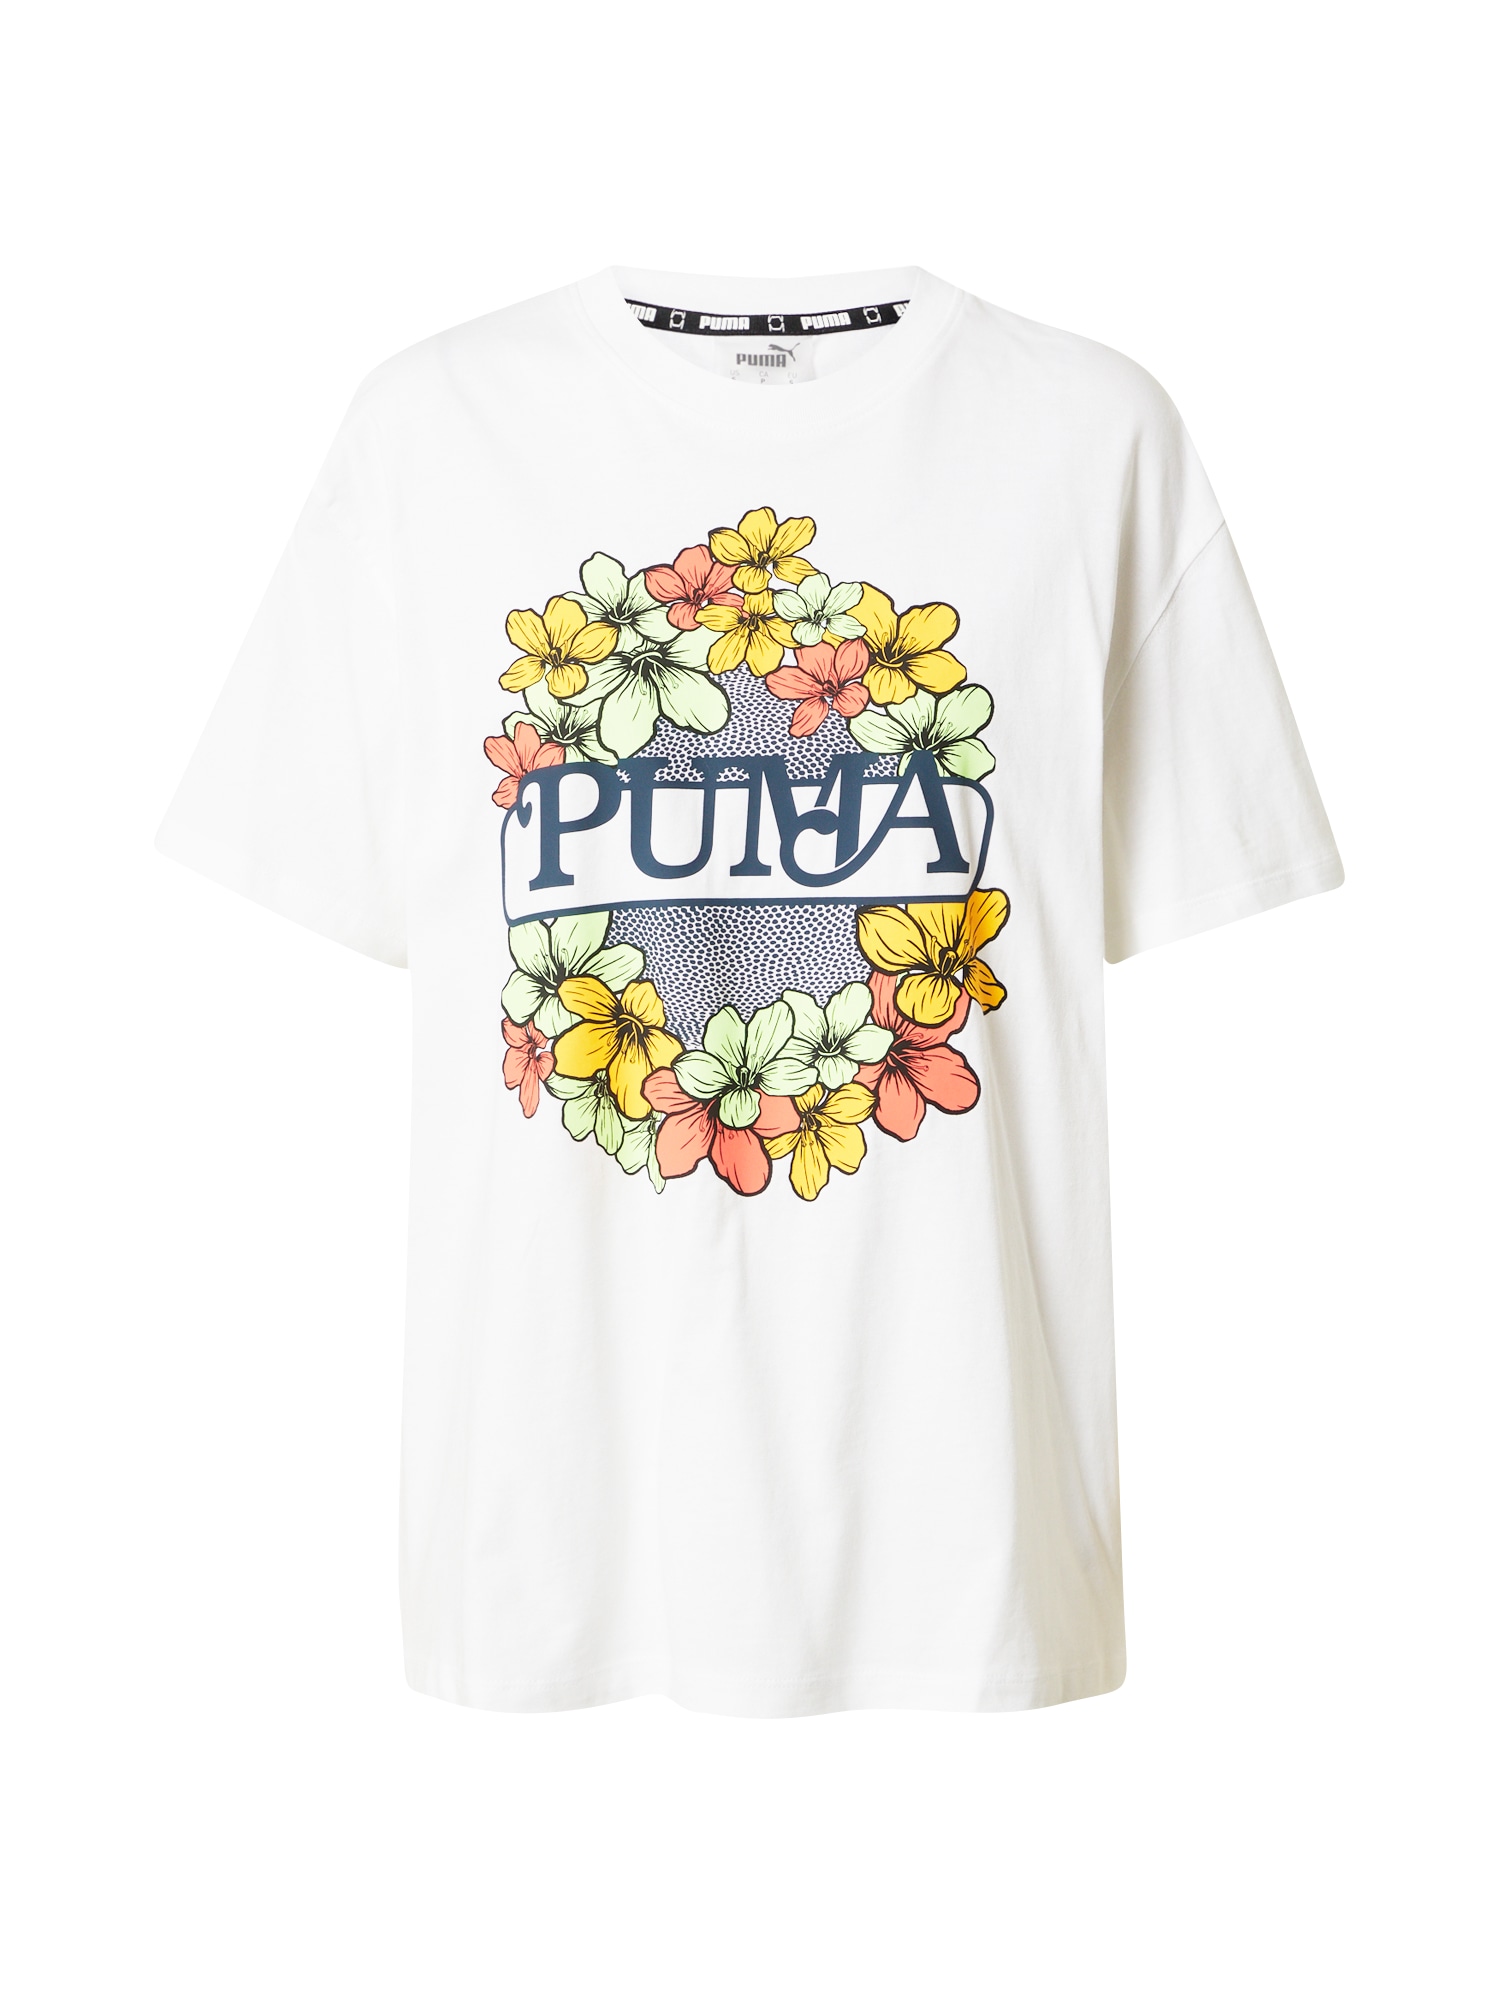 T-Shirt von Puma